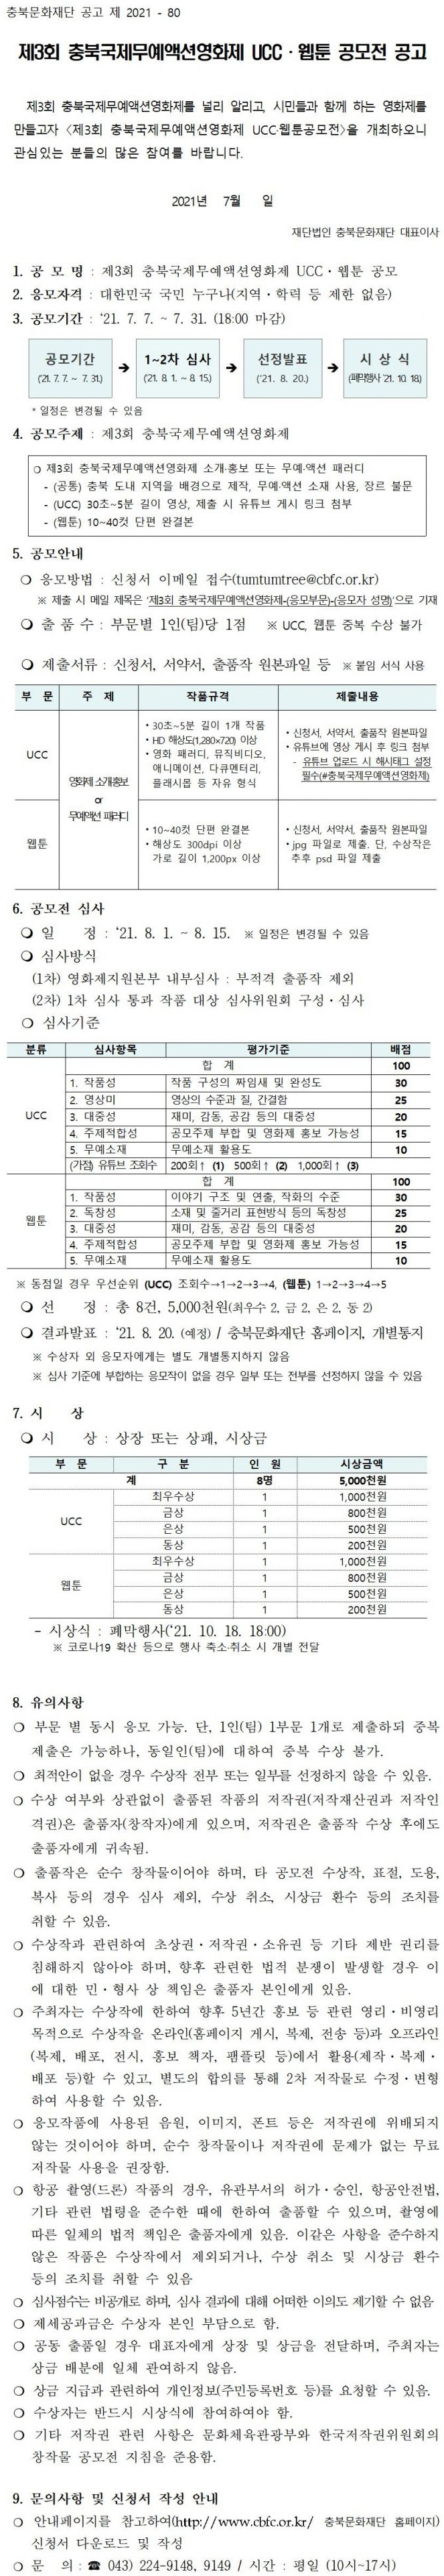 제3회 충북국제무예액션영화제 UCC·웹툰 공모